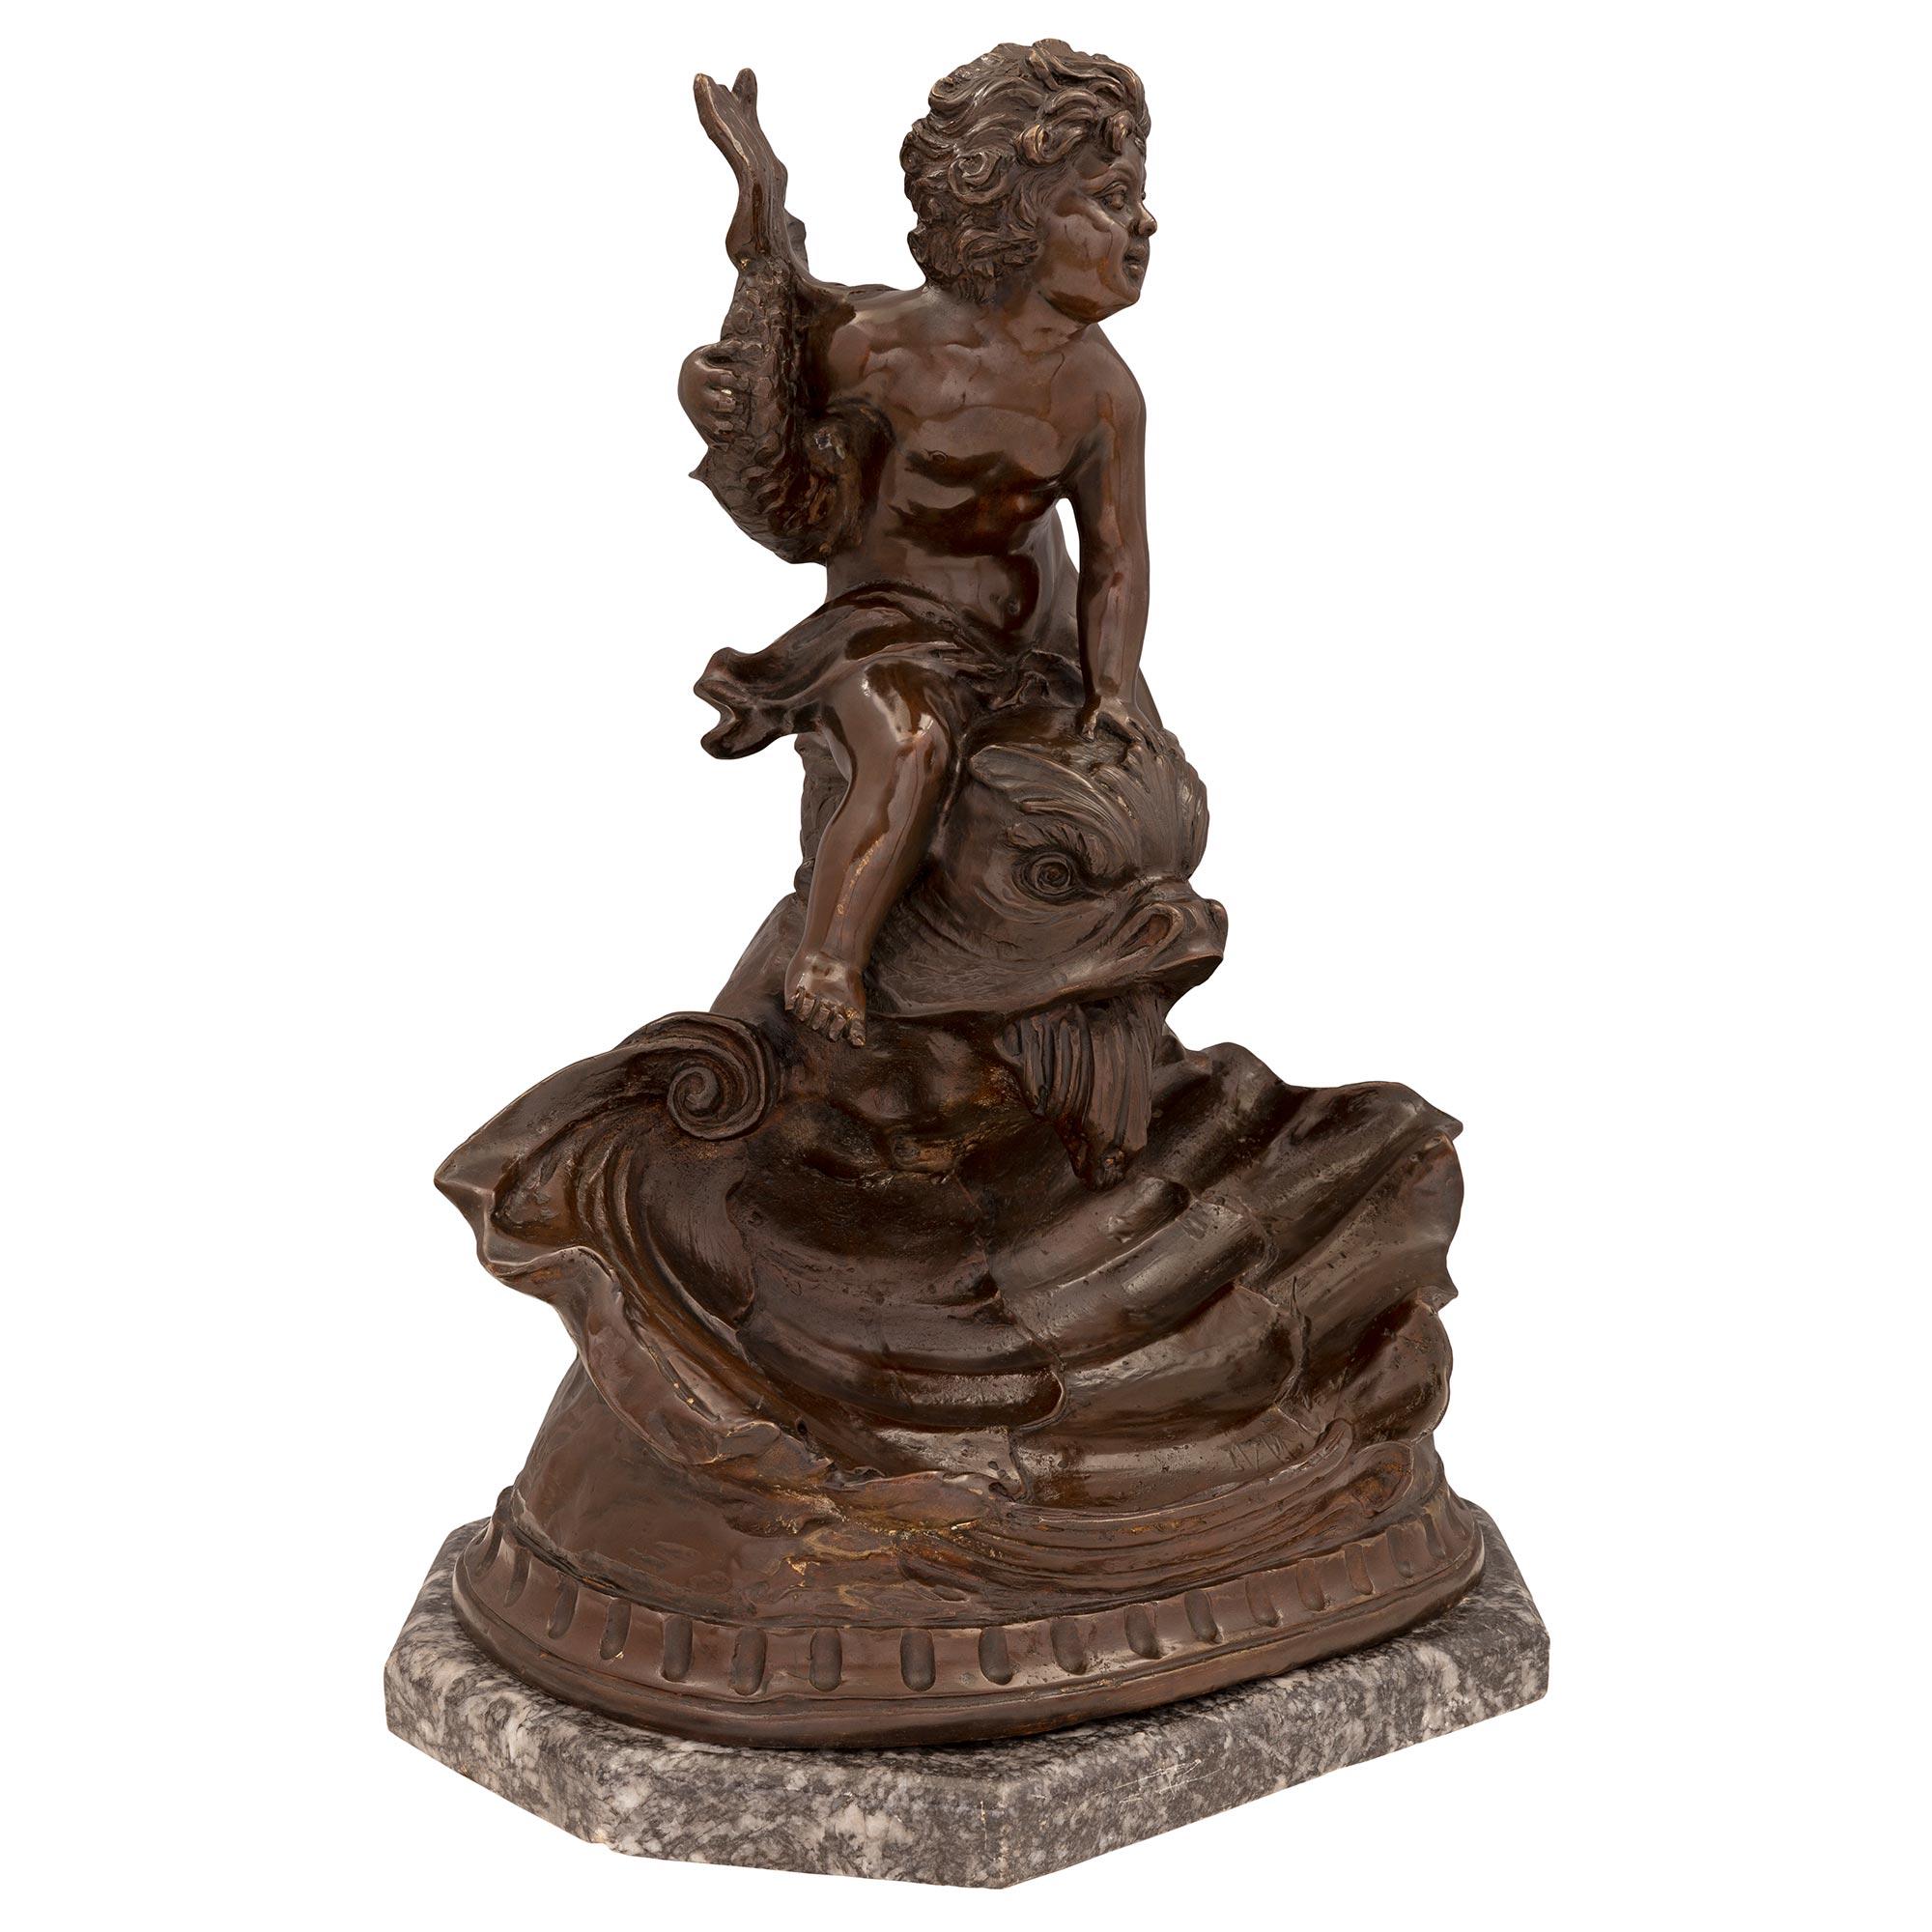 Eine markante französische Statue aus patinierter Bronze und Marmor Gris St. Anne aus dem 19. Jahrhundert, signiert Kinsburger. Die Statue steht auf ihrem eleganten achteckigen Sockel aus Marmor in Gris St. Anne unter der beeindruckenden Schale in